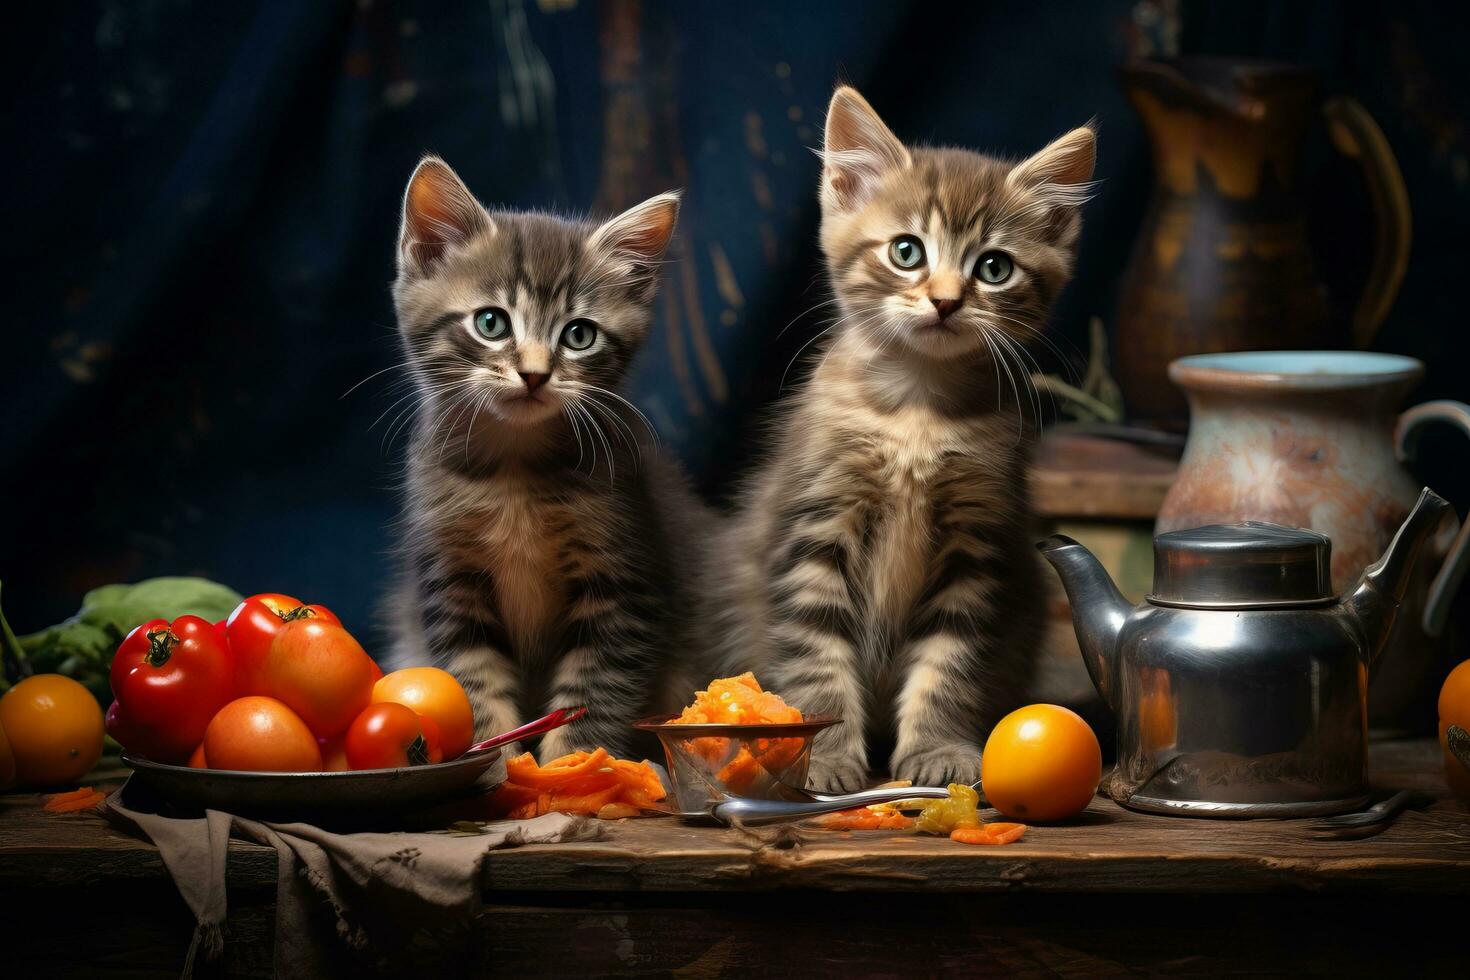 süß Kätzchen mit Essen foto